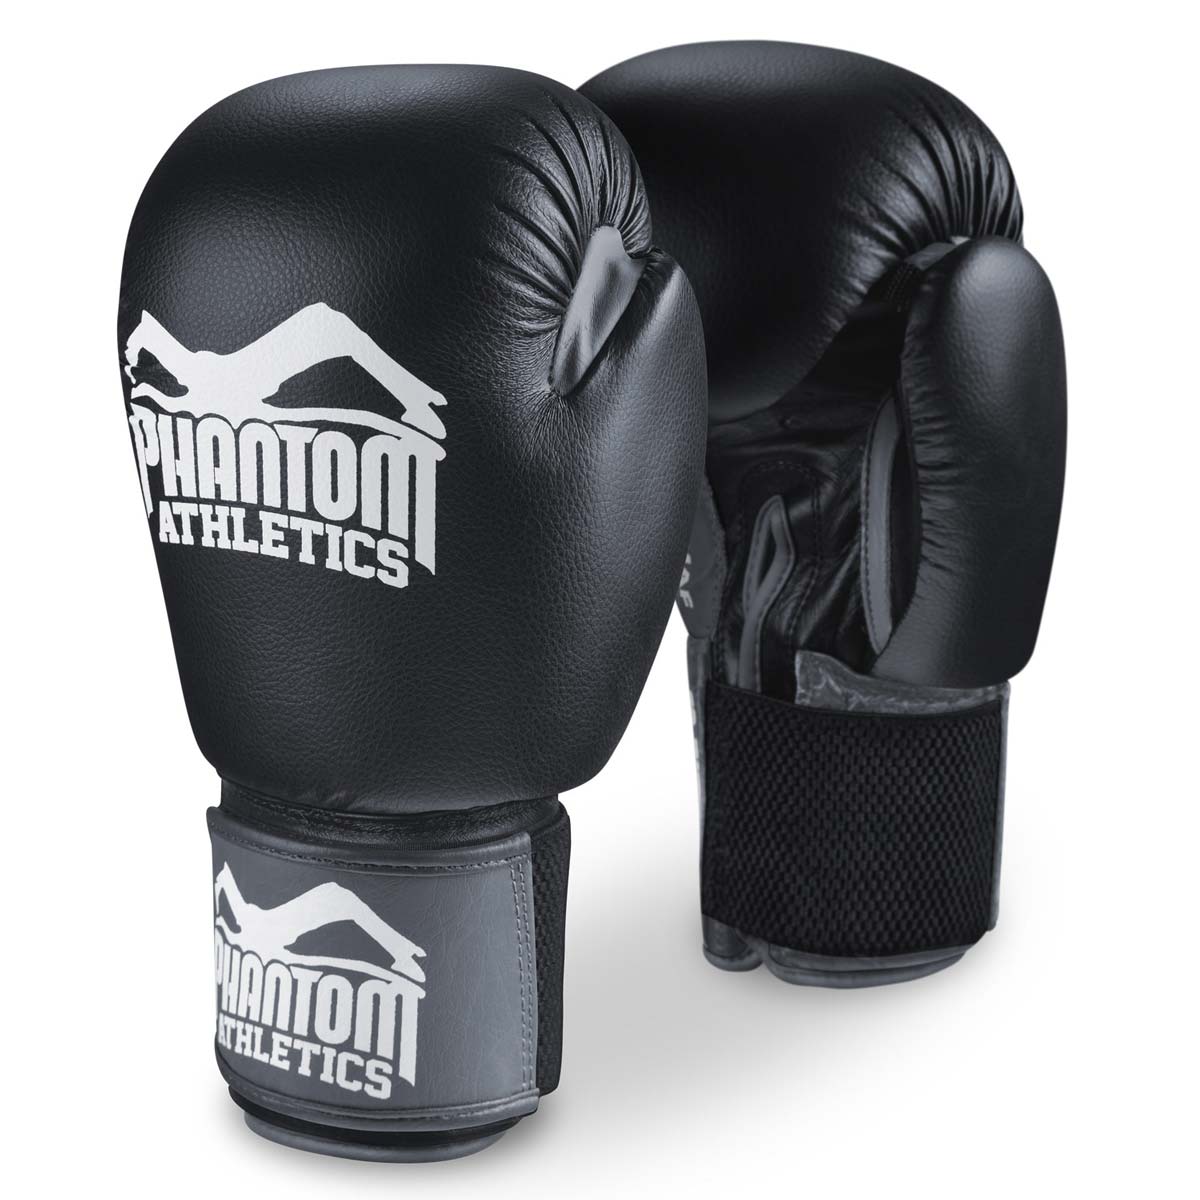 Die Phantom Boxhandschuhe Ultra für Training, Sparring und Wettkampf.